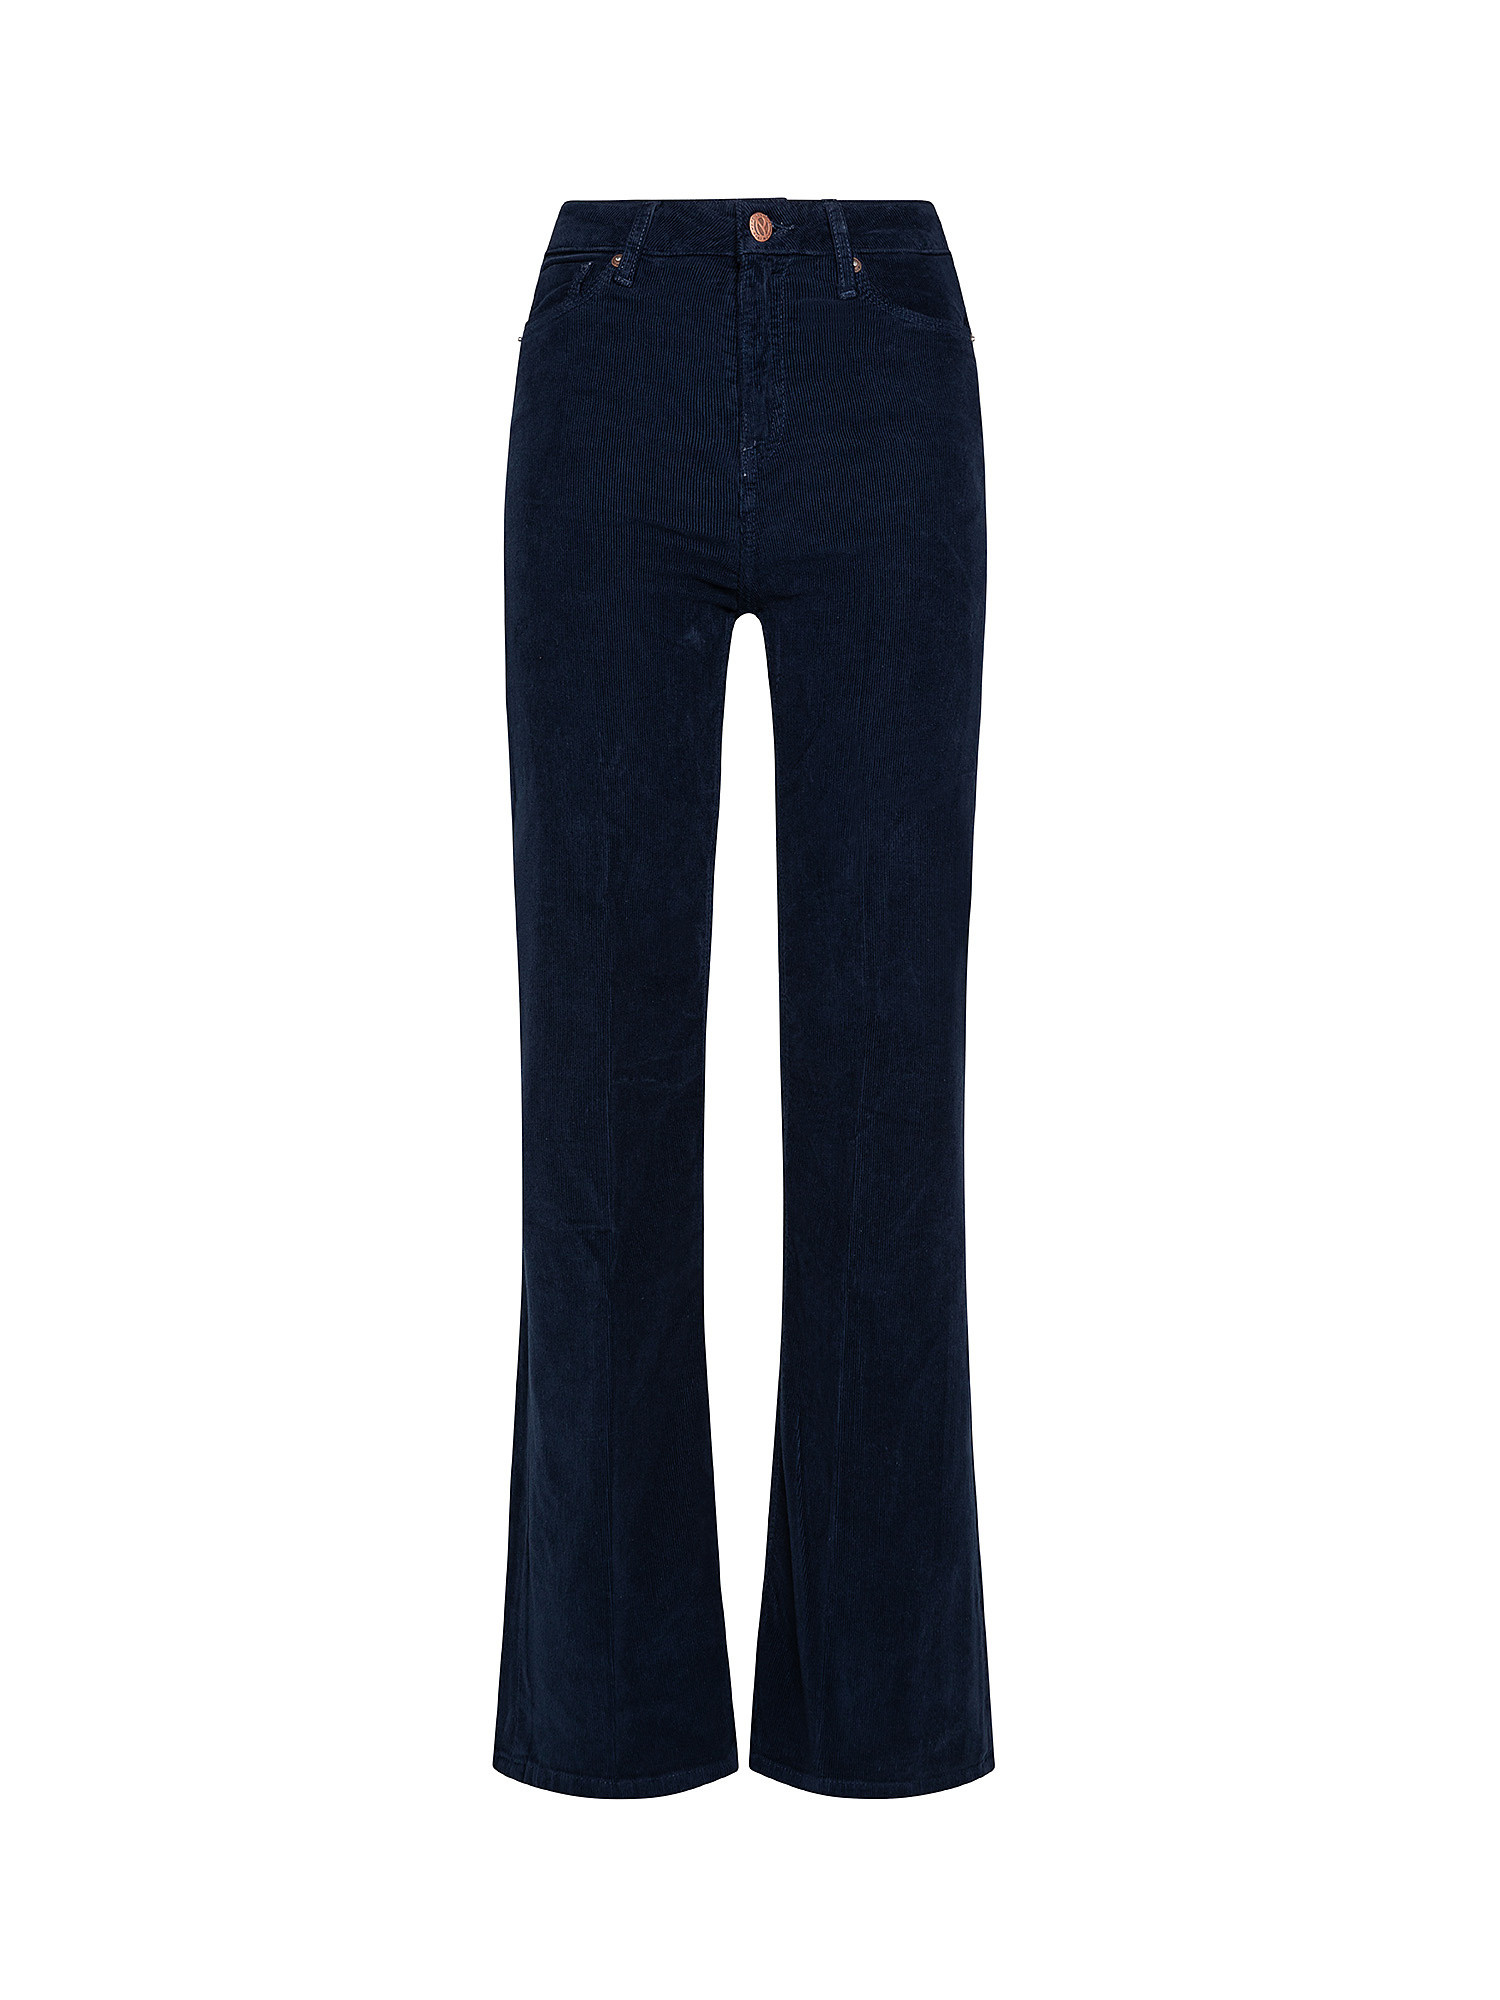 Pantaloni Willa, Blu scuro, large image number 0